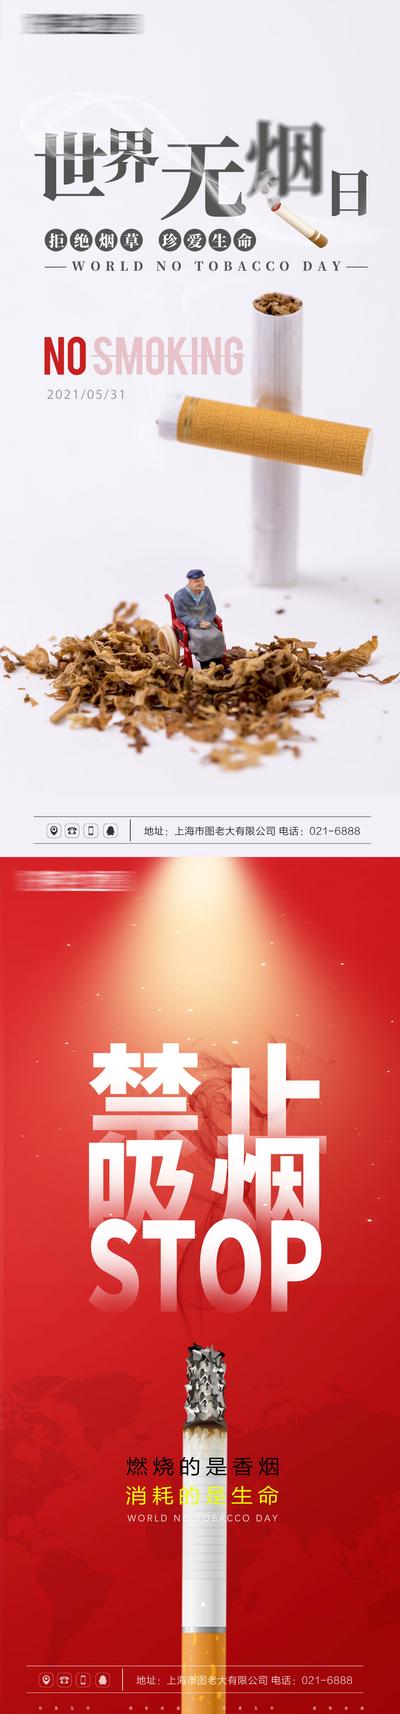 【南门网】海报 地产 公历节日 世界无烟日 健康 禁止吸烟 二手烟